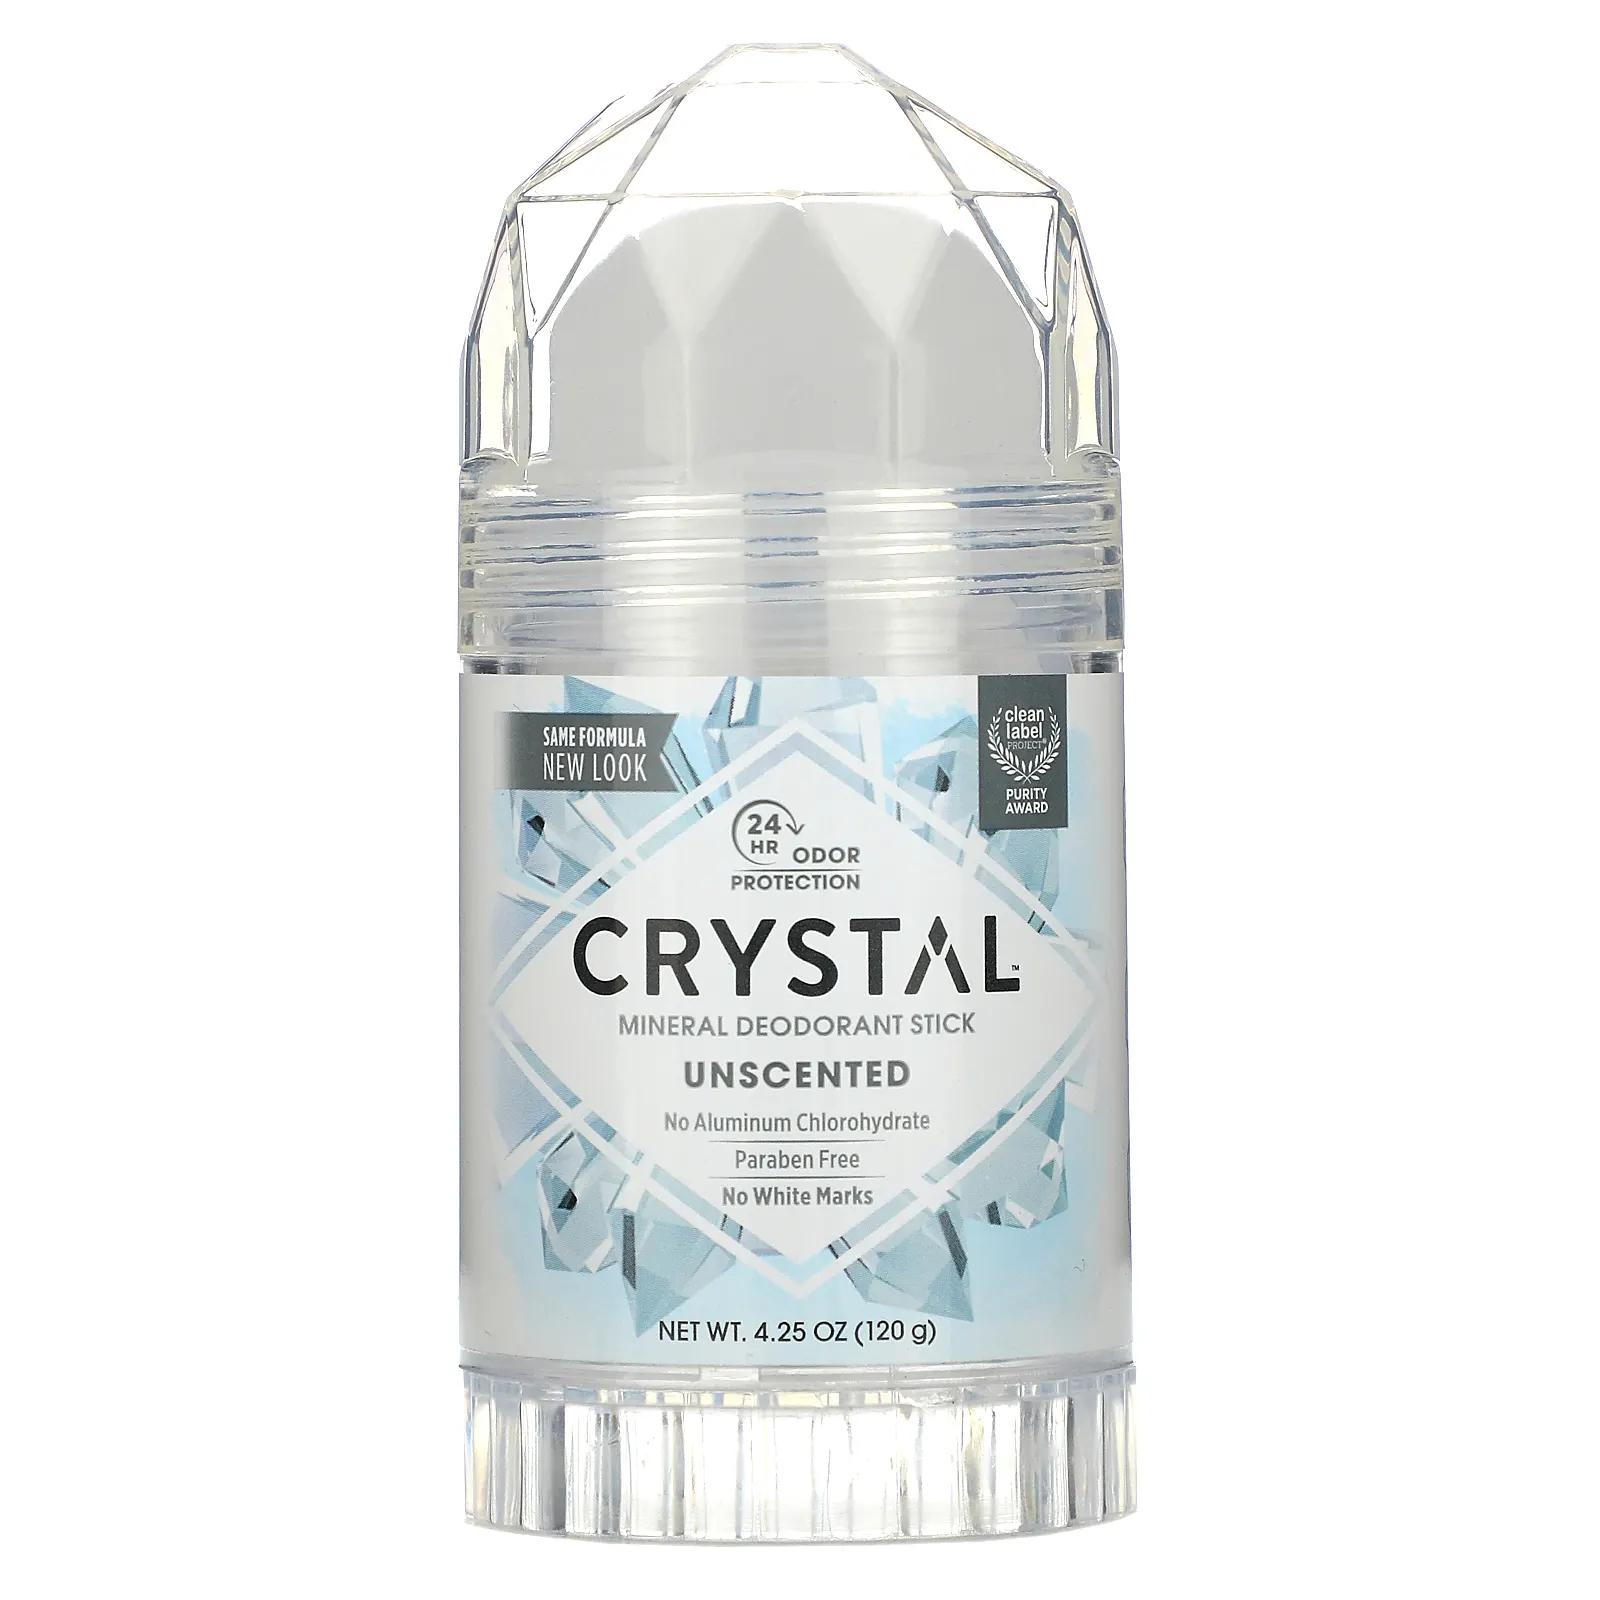 Crystal Body Deodorant Минеральный твердый дезодорант Без запаха 4,25 унц. (120 г) crystal body deodorant минеральный дезодорант карандаш без запаха 120 г 4 25 унции